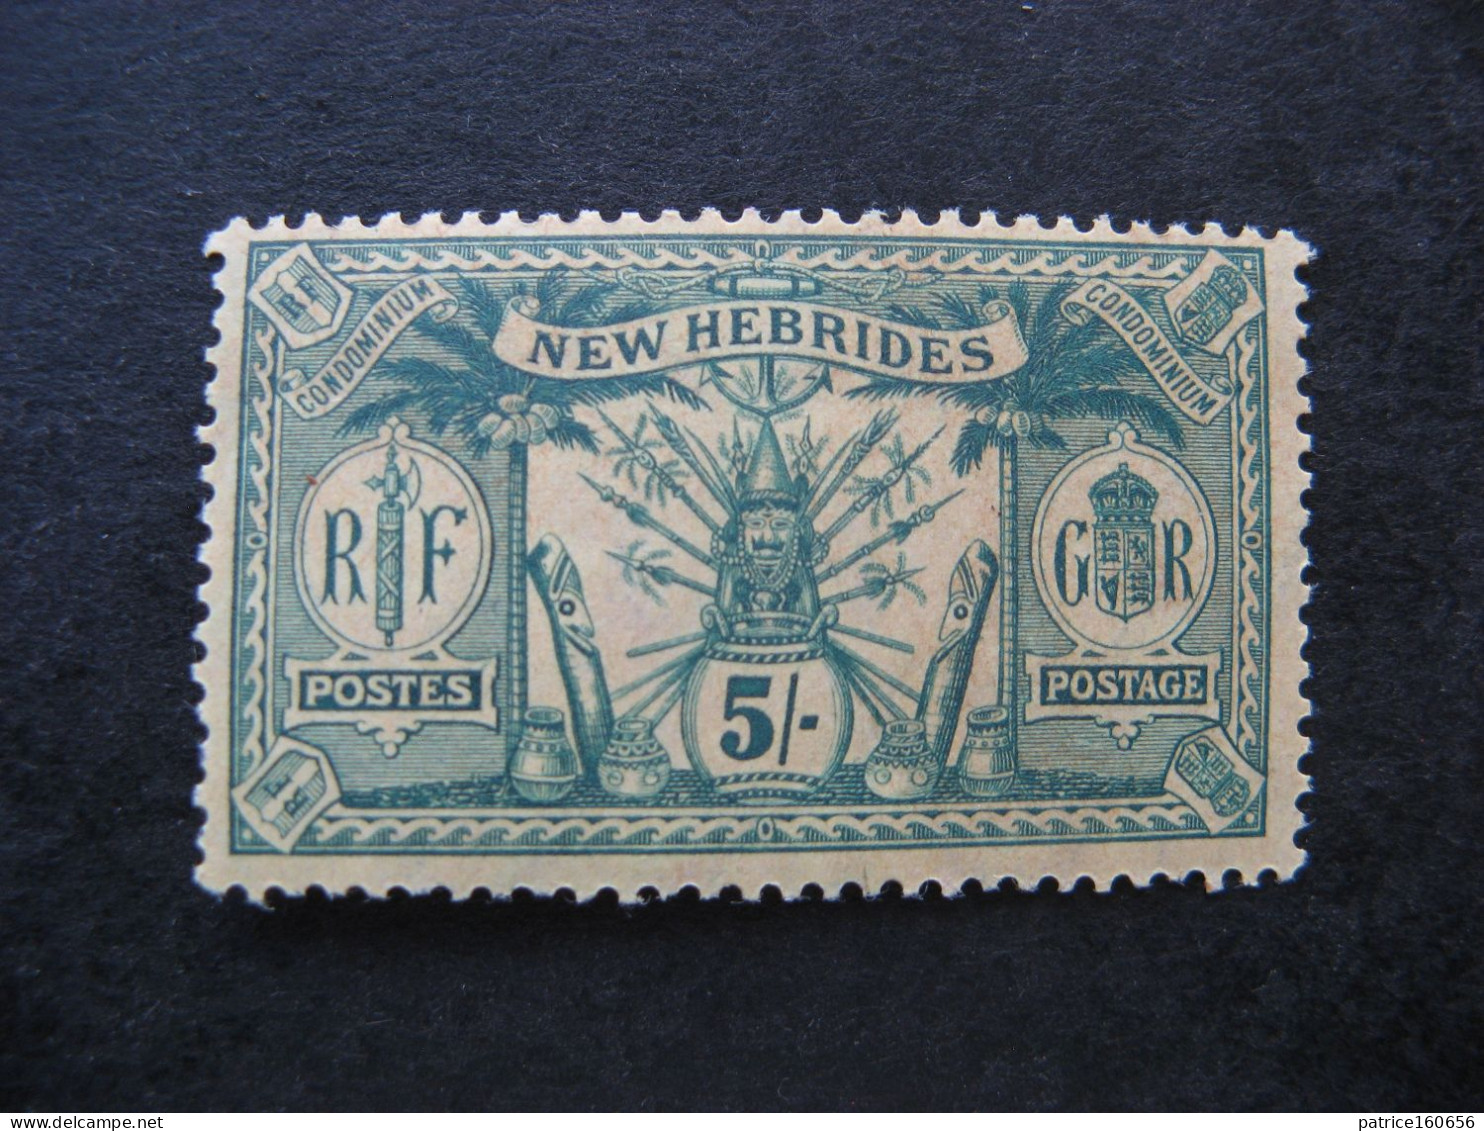 Nouvelles-Hébrides: TB N° 57, Neufs XX. - Unused Stamps